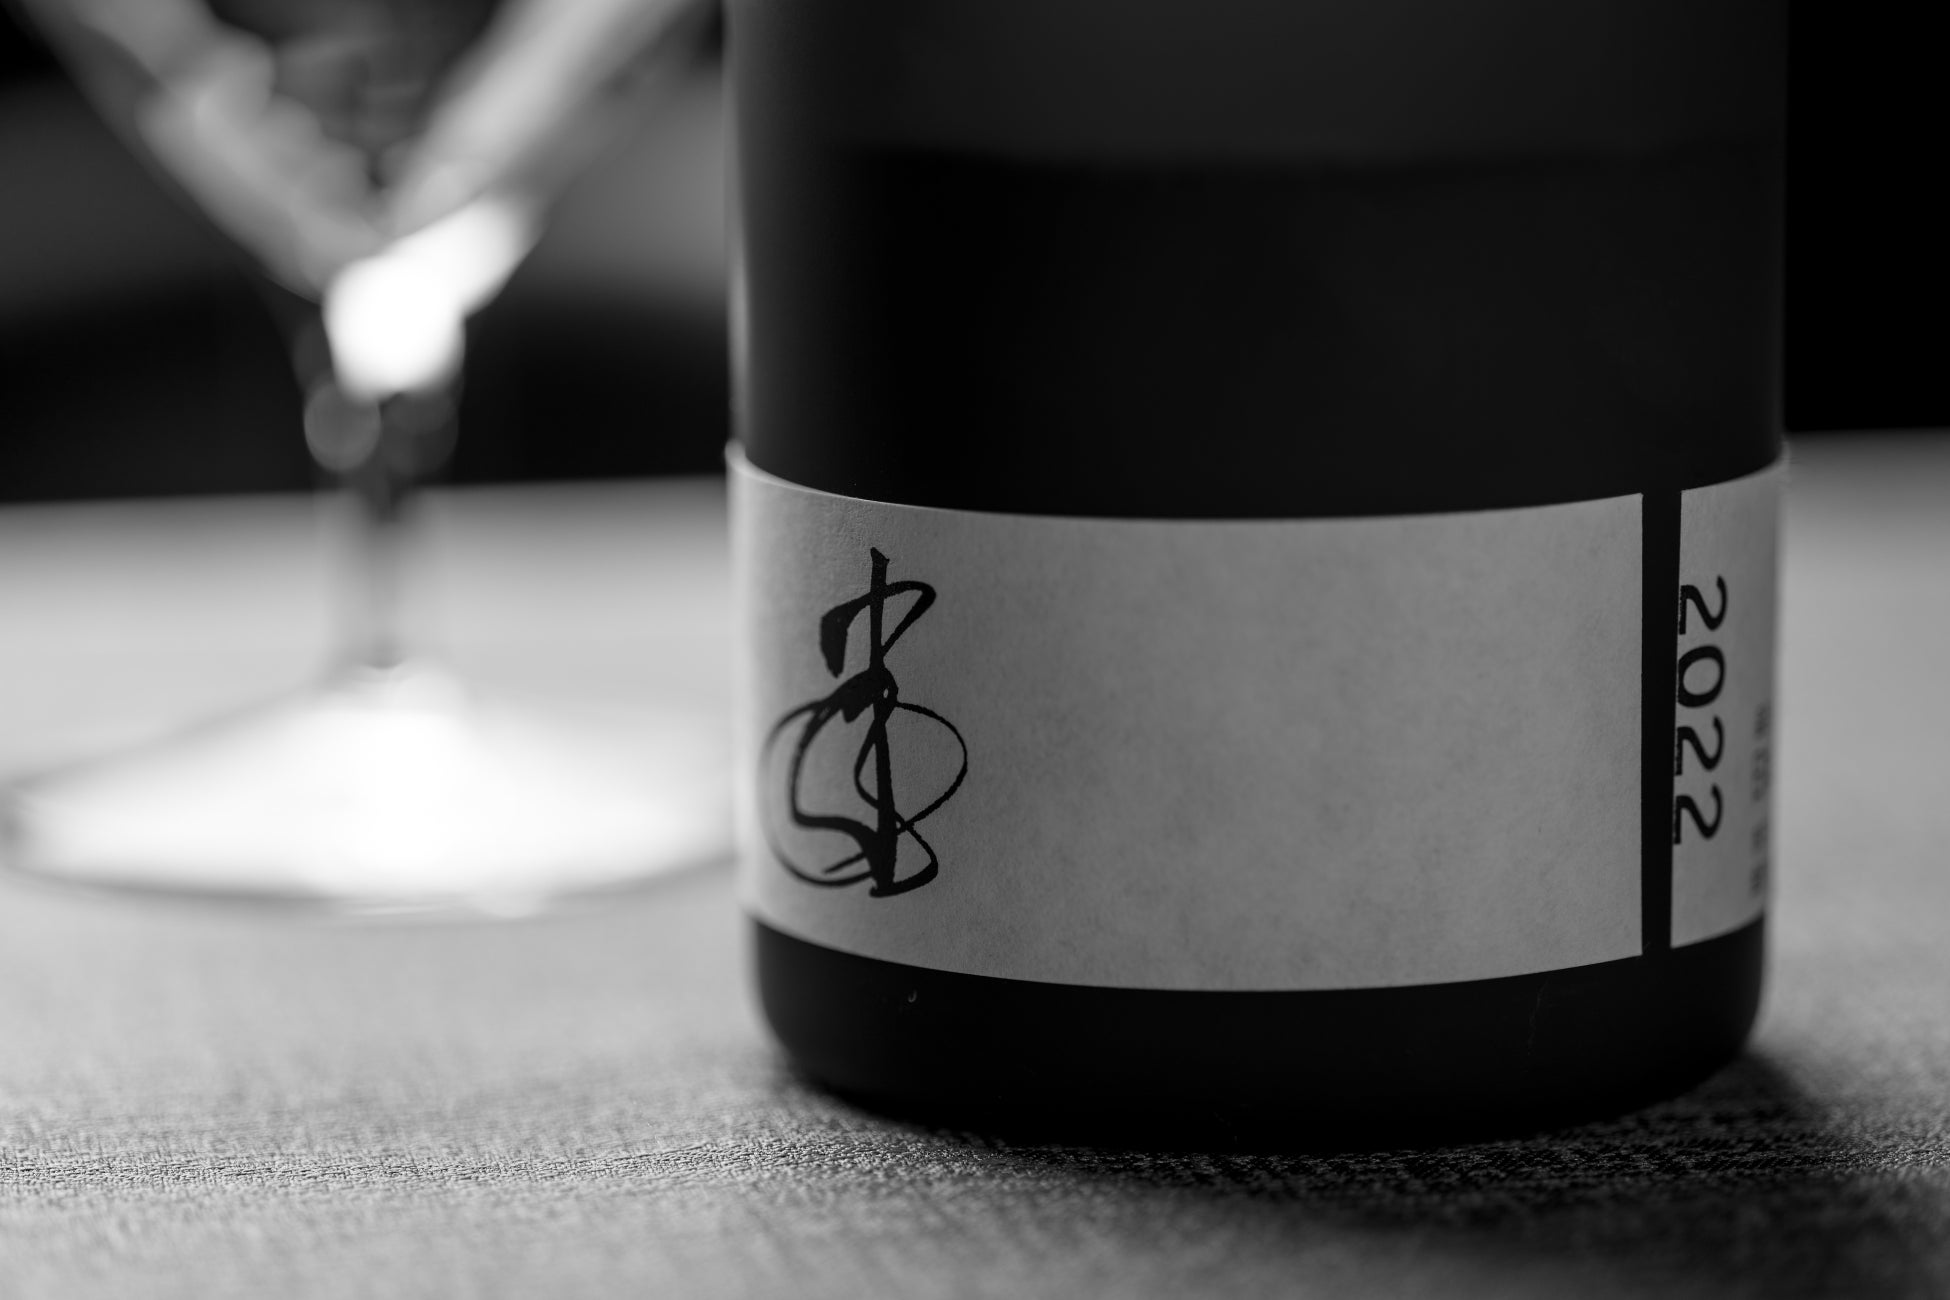 会員制の日本酒ブランド「F1625」が発売から１年半が経過した日本酒「いのたち2022」の価格改定を発表。時と共に変化する味わいをヴィンテージという考え方で再評価し、日本酒の新しいあり方を提案する。